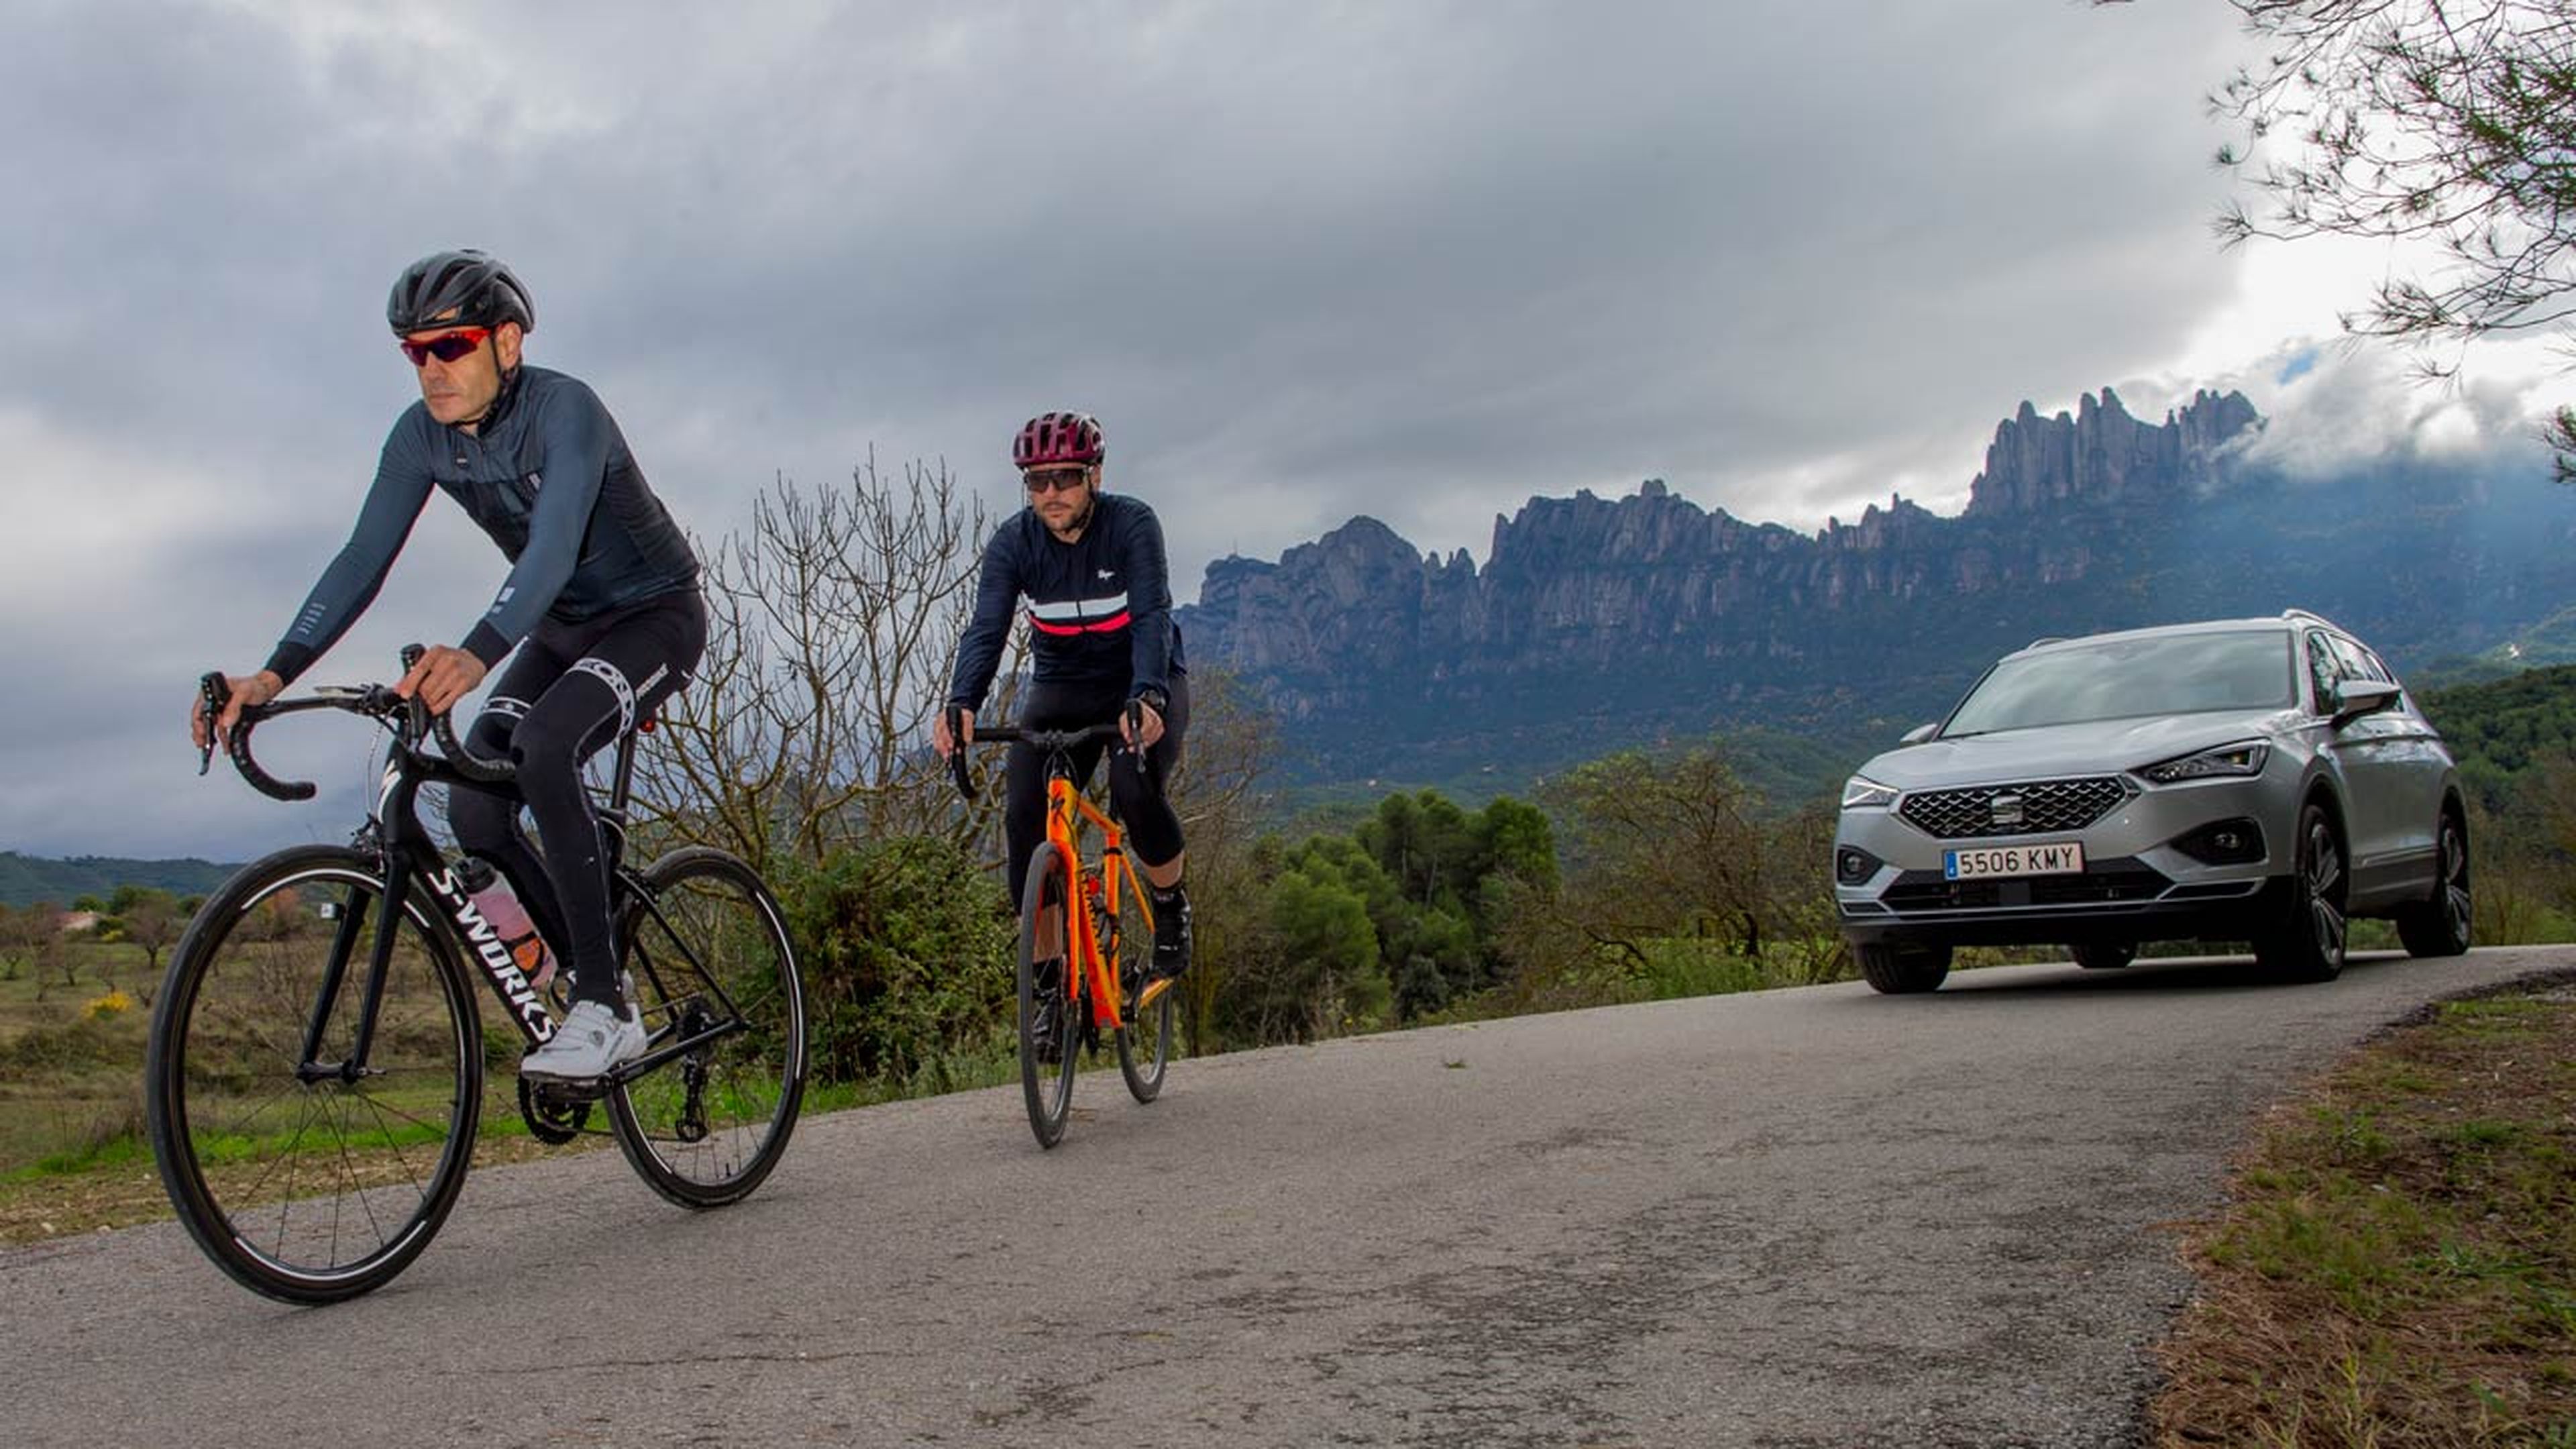 Seat Tarraco detecta ciclistas